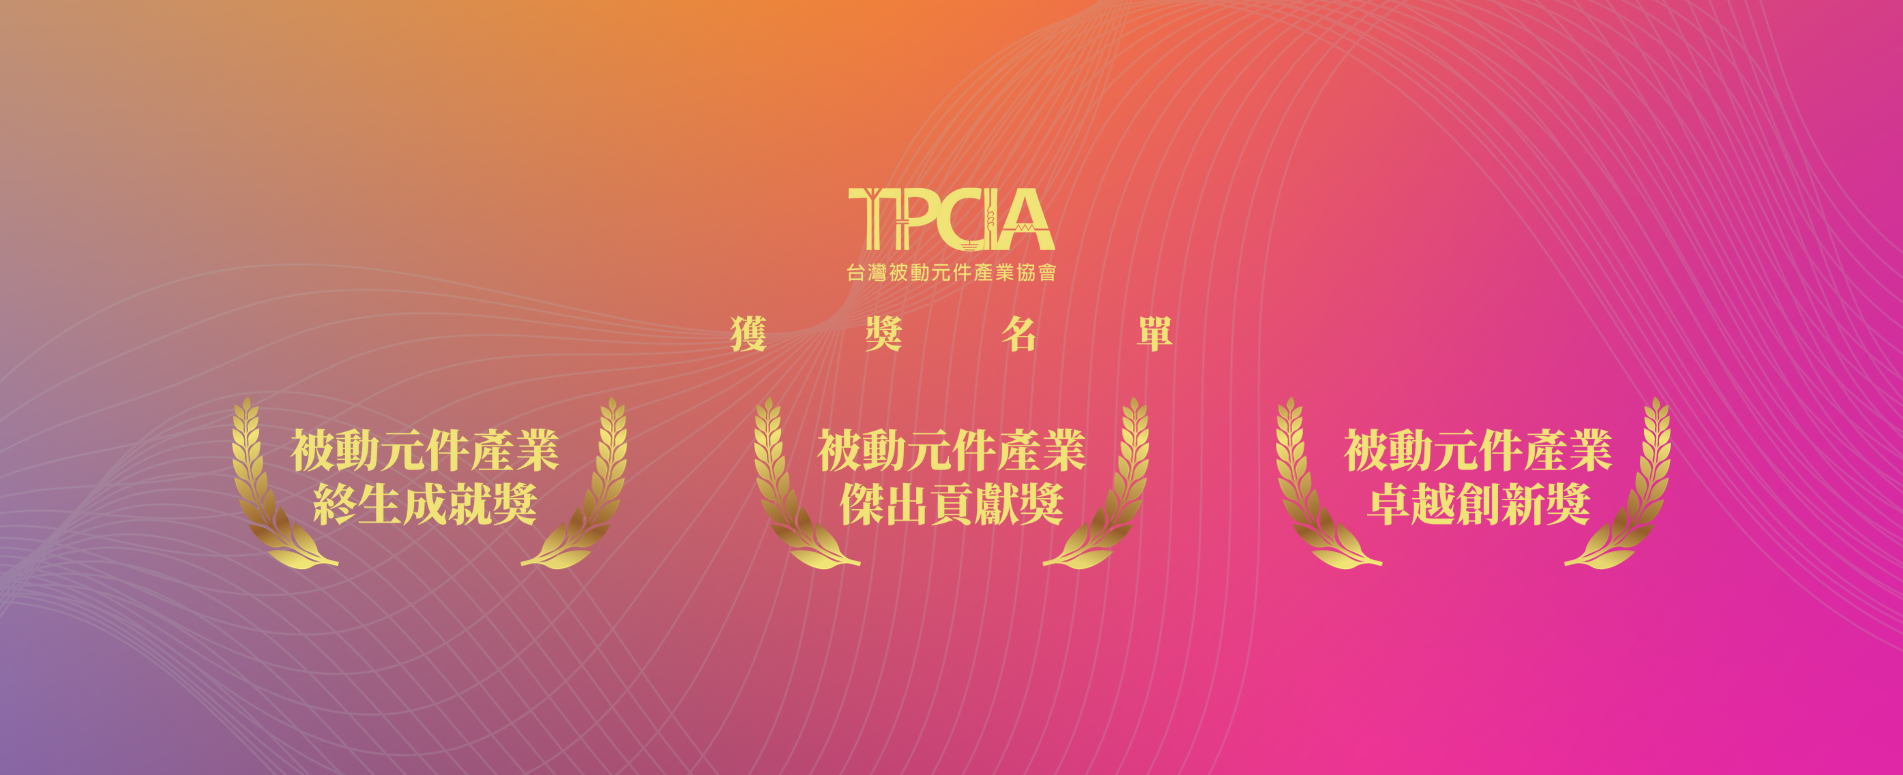 台灣被動元件產業協會 「被動元件產業終生成就獎」、「被動元件產業傑出貢獻獎」 及「被動元件產業卓越創新獎」